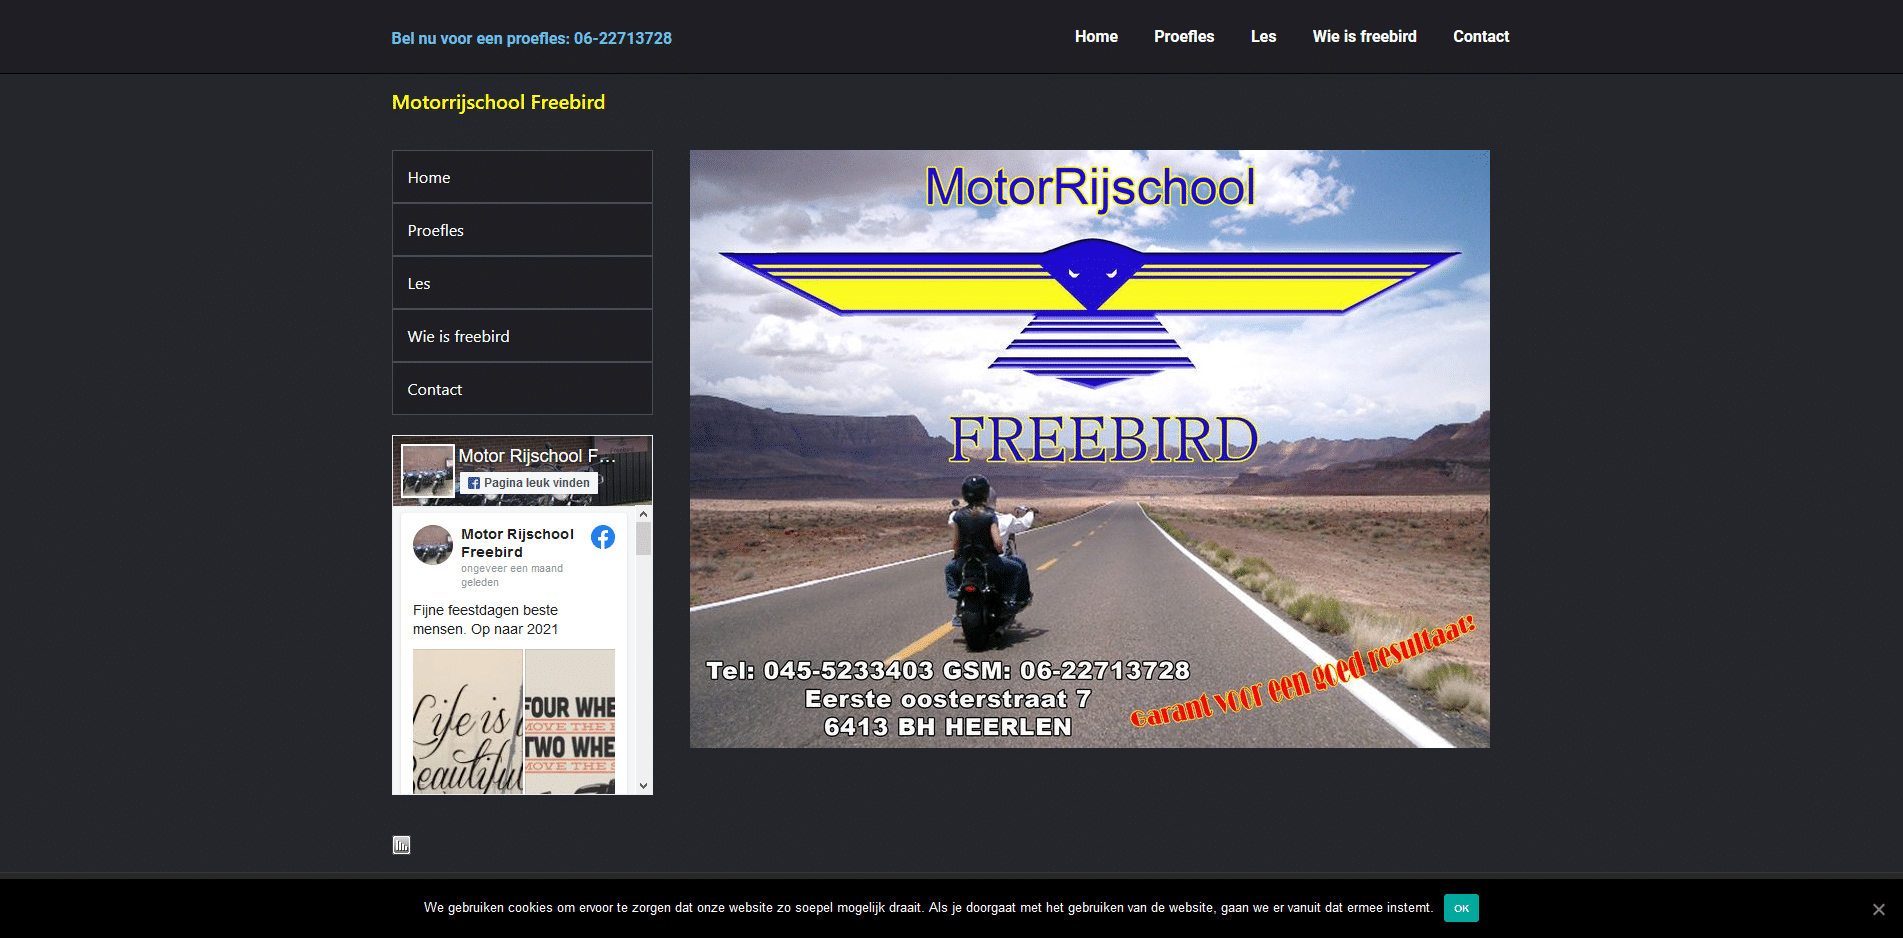 Motorrijschool Freebird